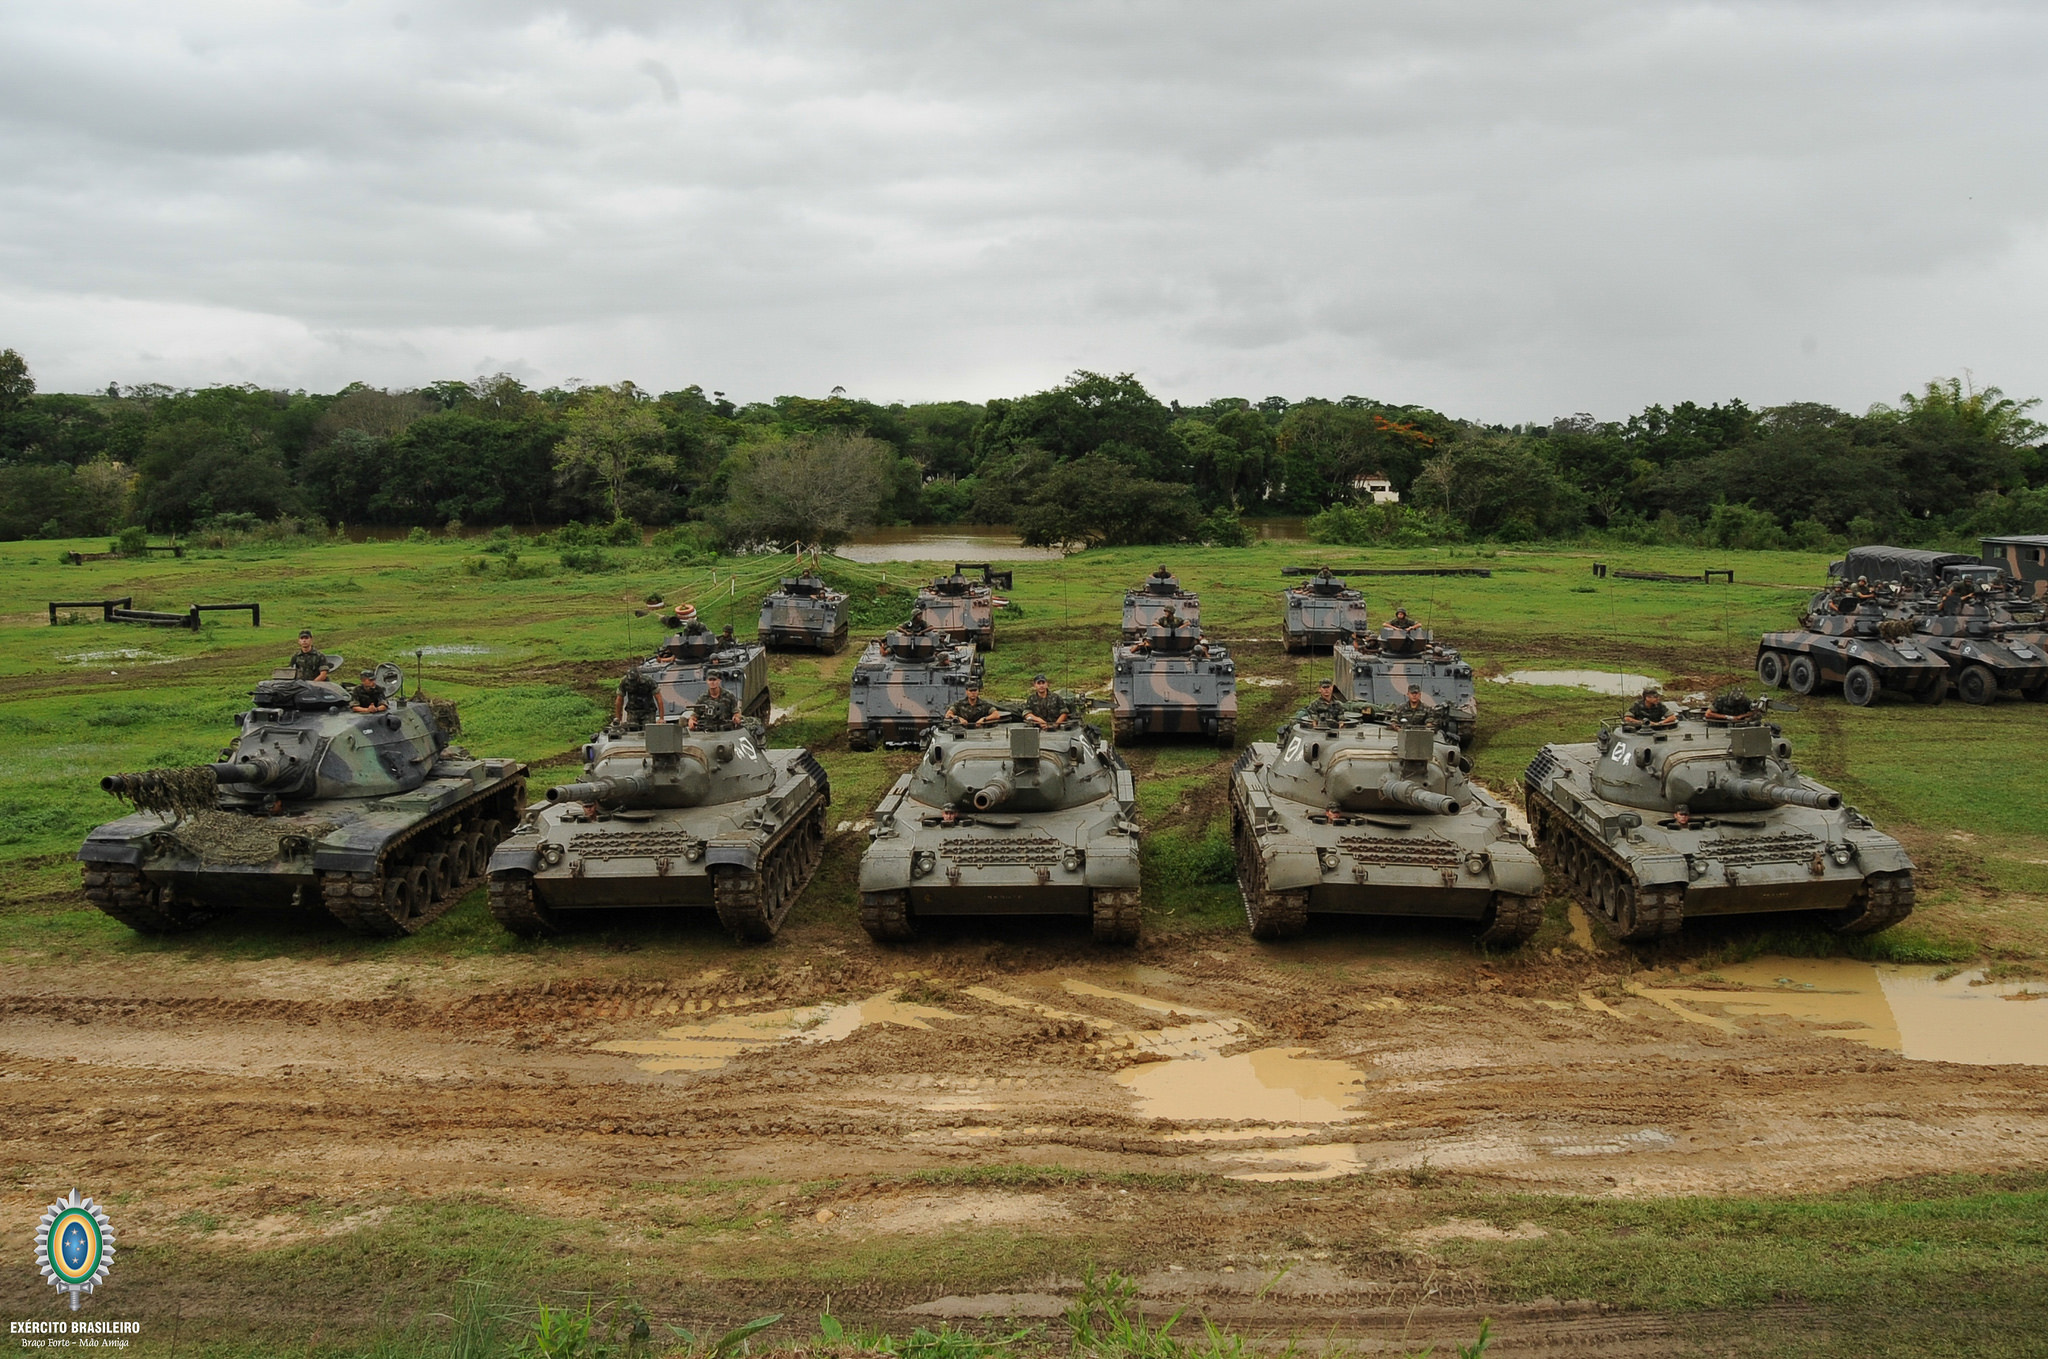 Dia do Exército Brasileiro - 19 de Abril - Brasil Escola